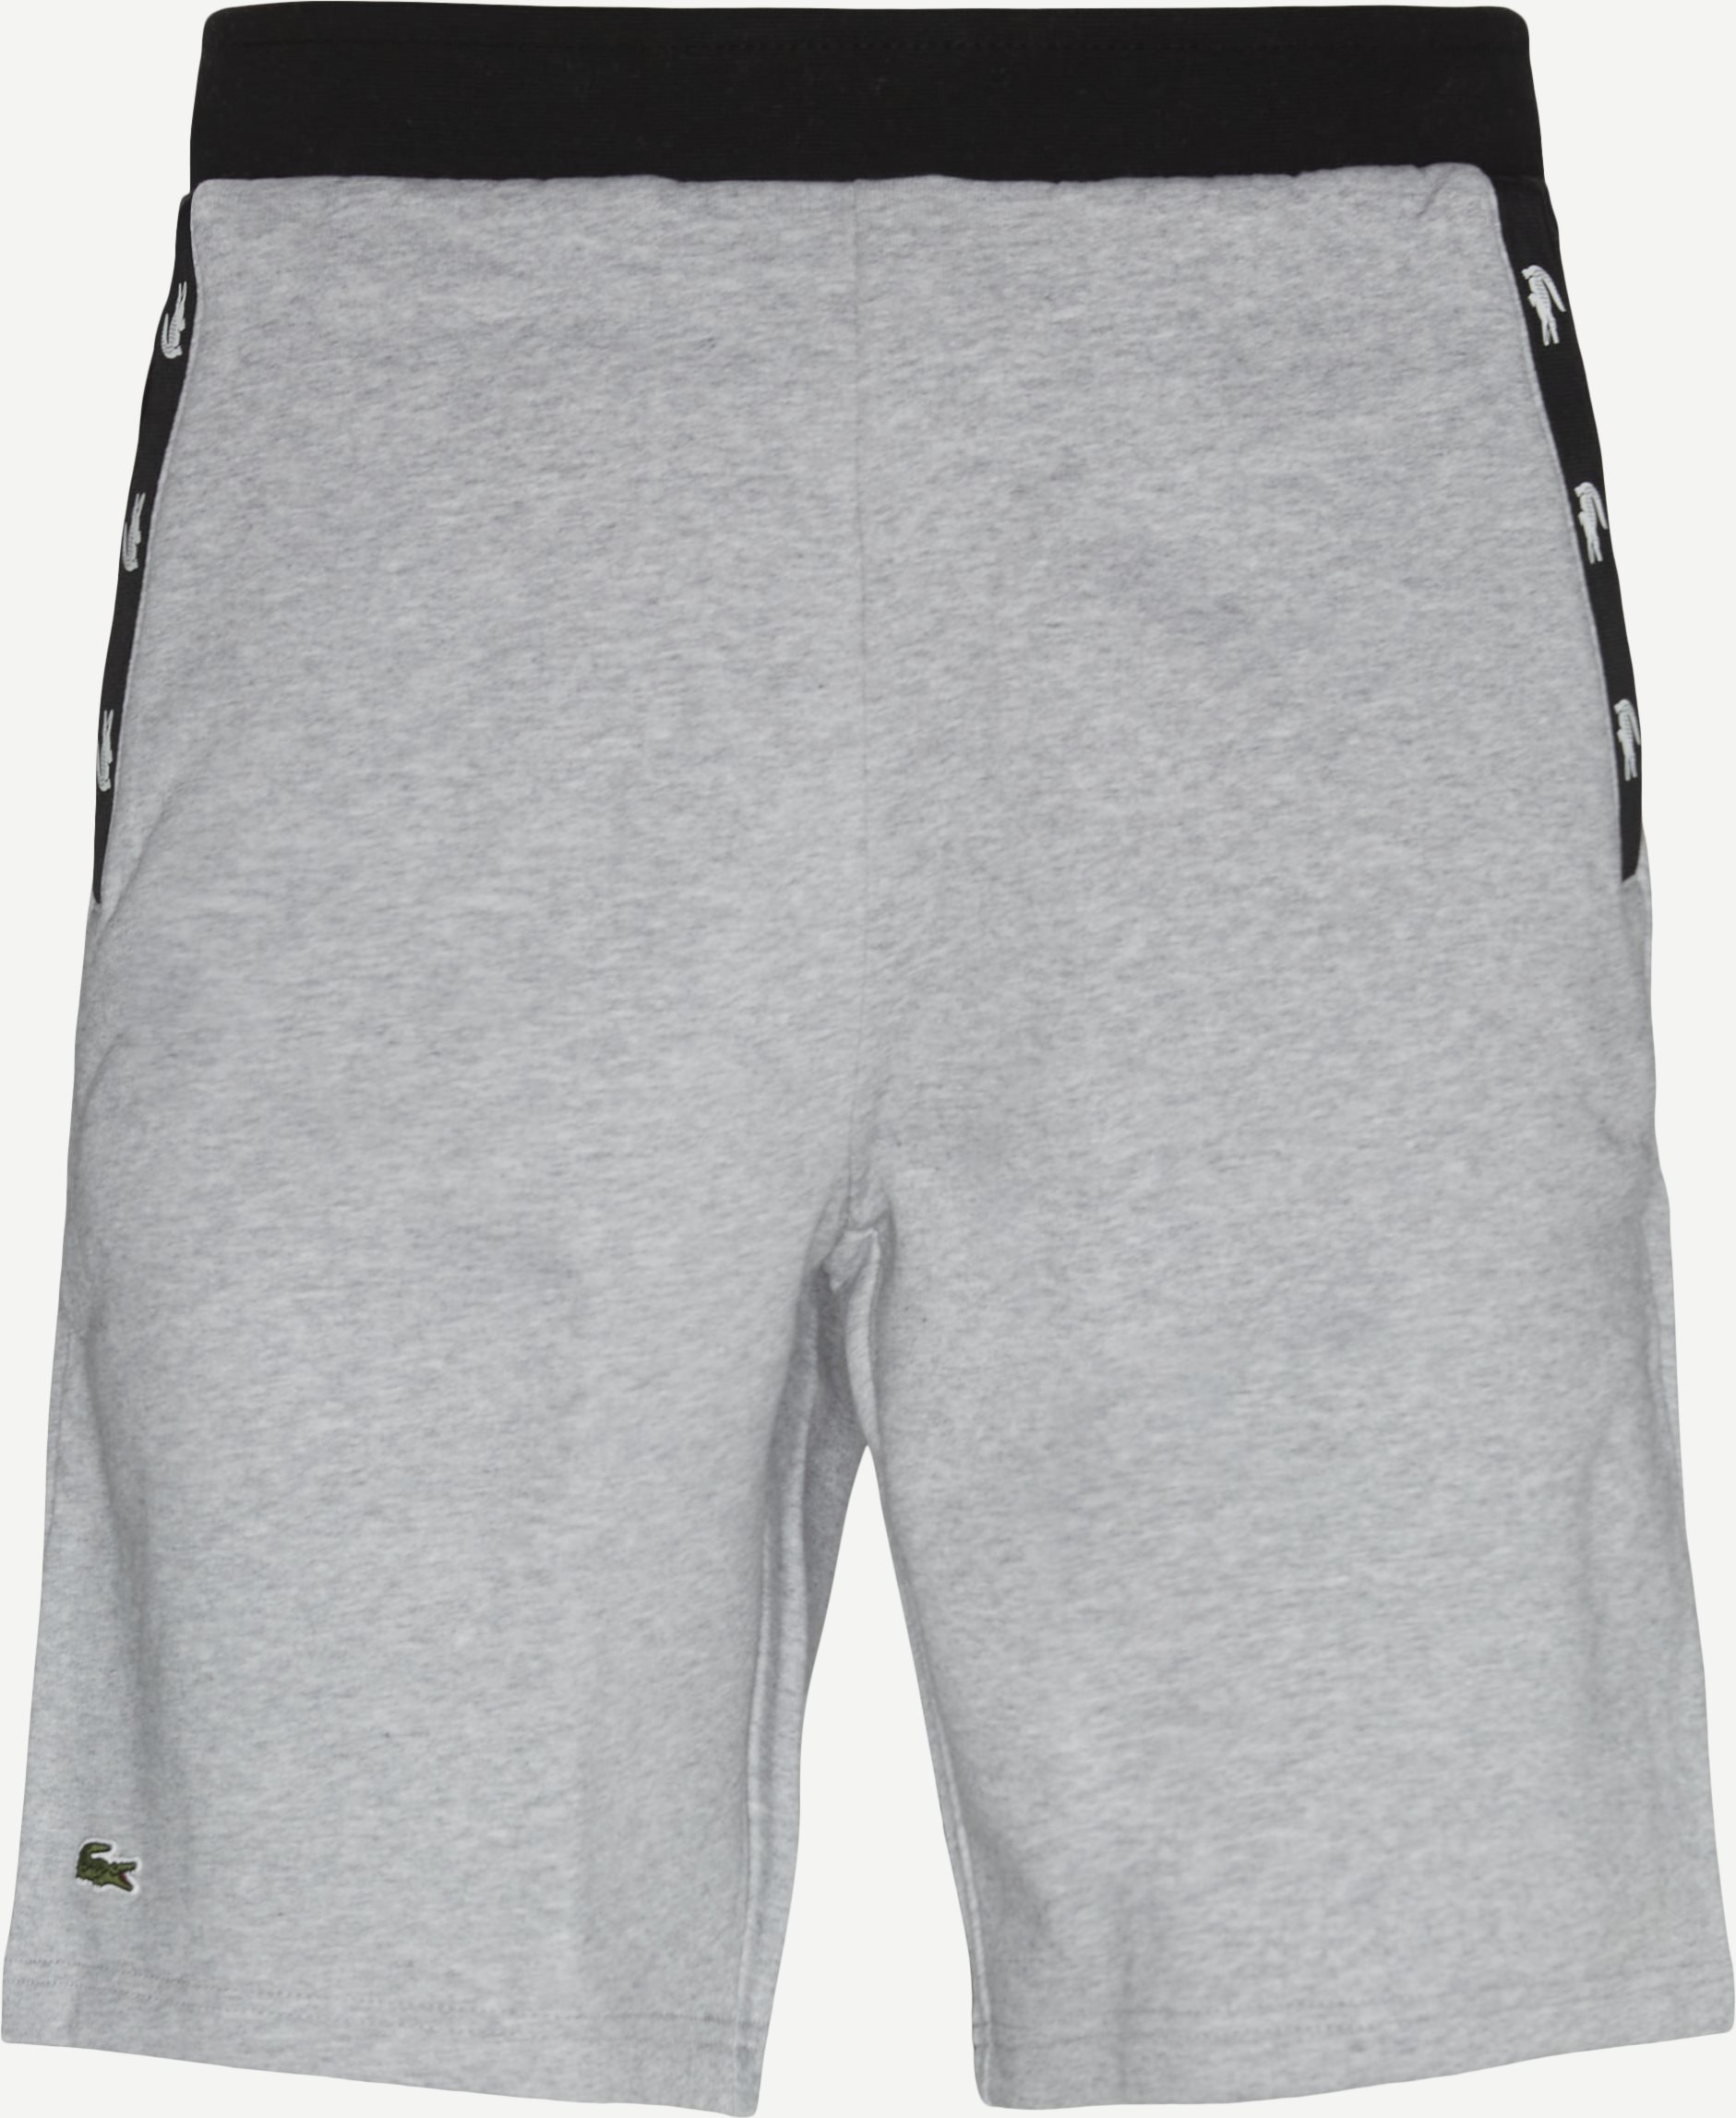 Baumwollshorts - Shorts - Regular fit - Grau